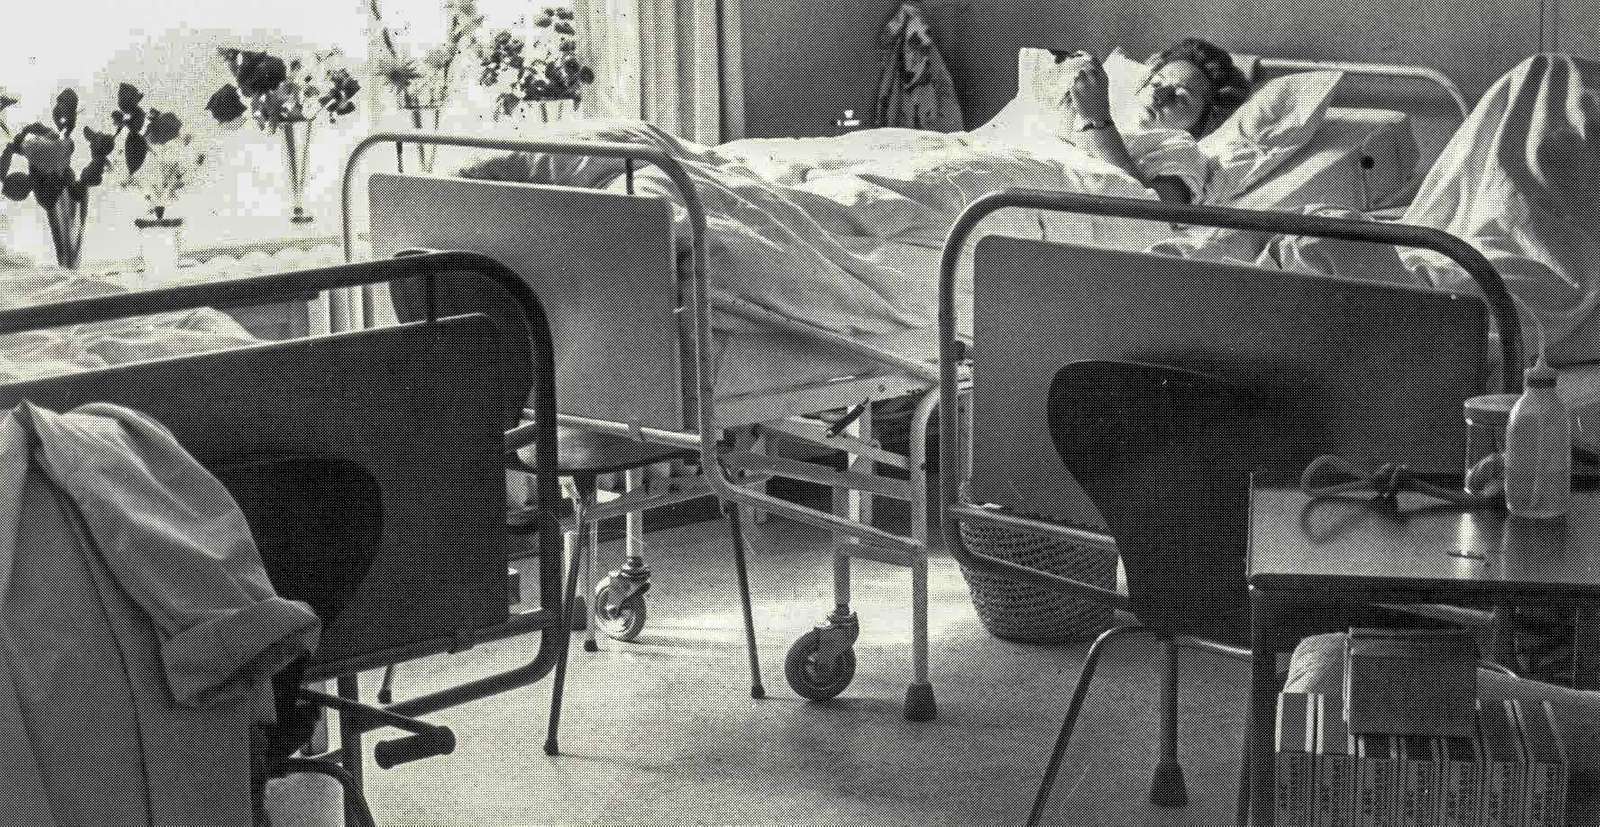 Trange forhold på sygestuen Farsø 1965